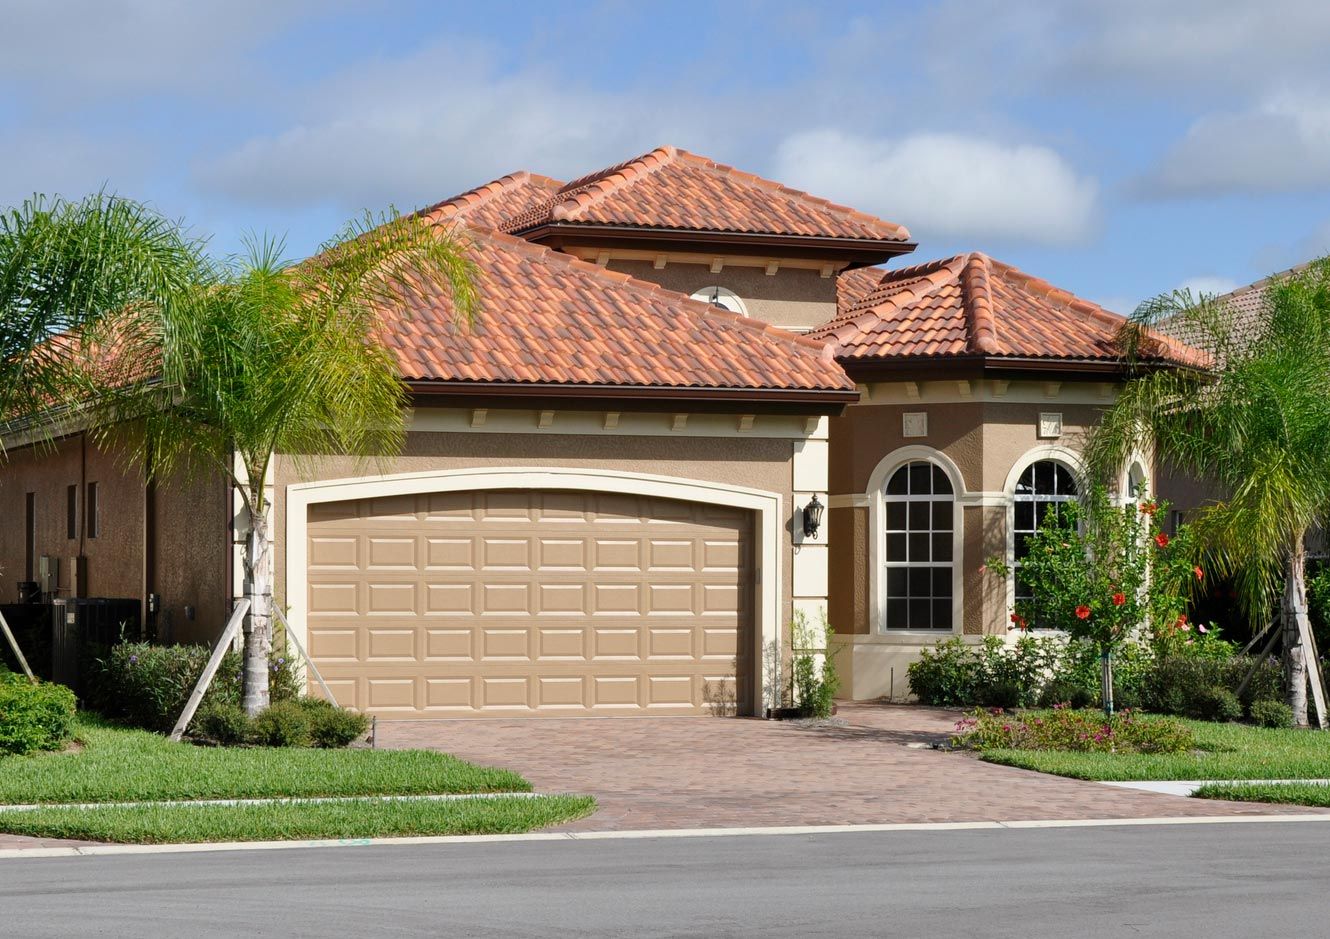 House New Garage Door — Naples, FL — Access Garage Doors Of Naples Florida